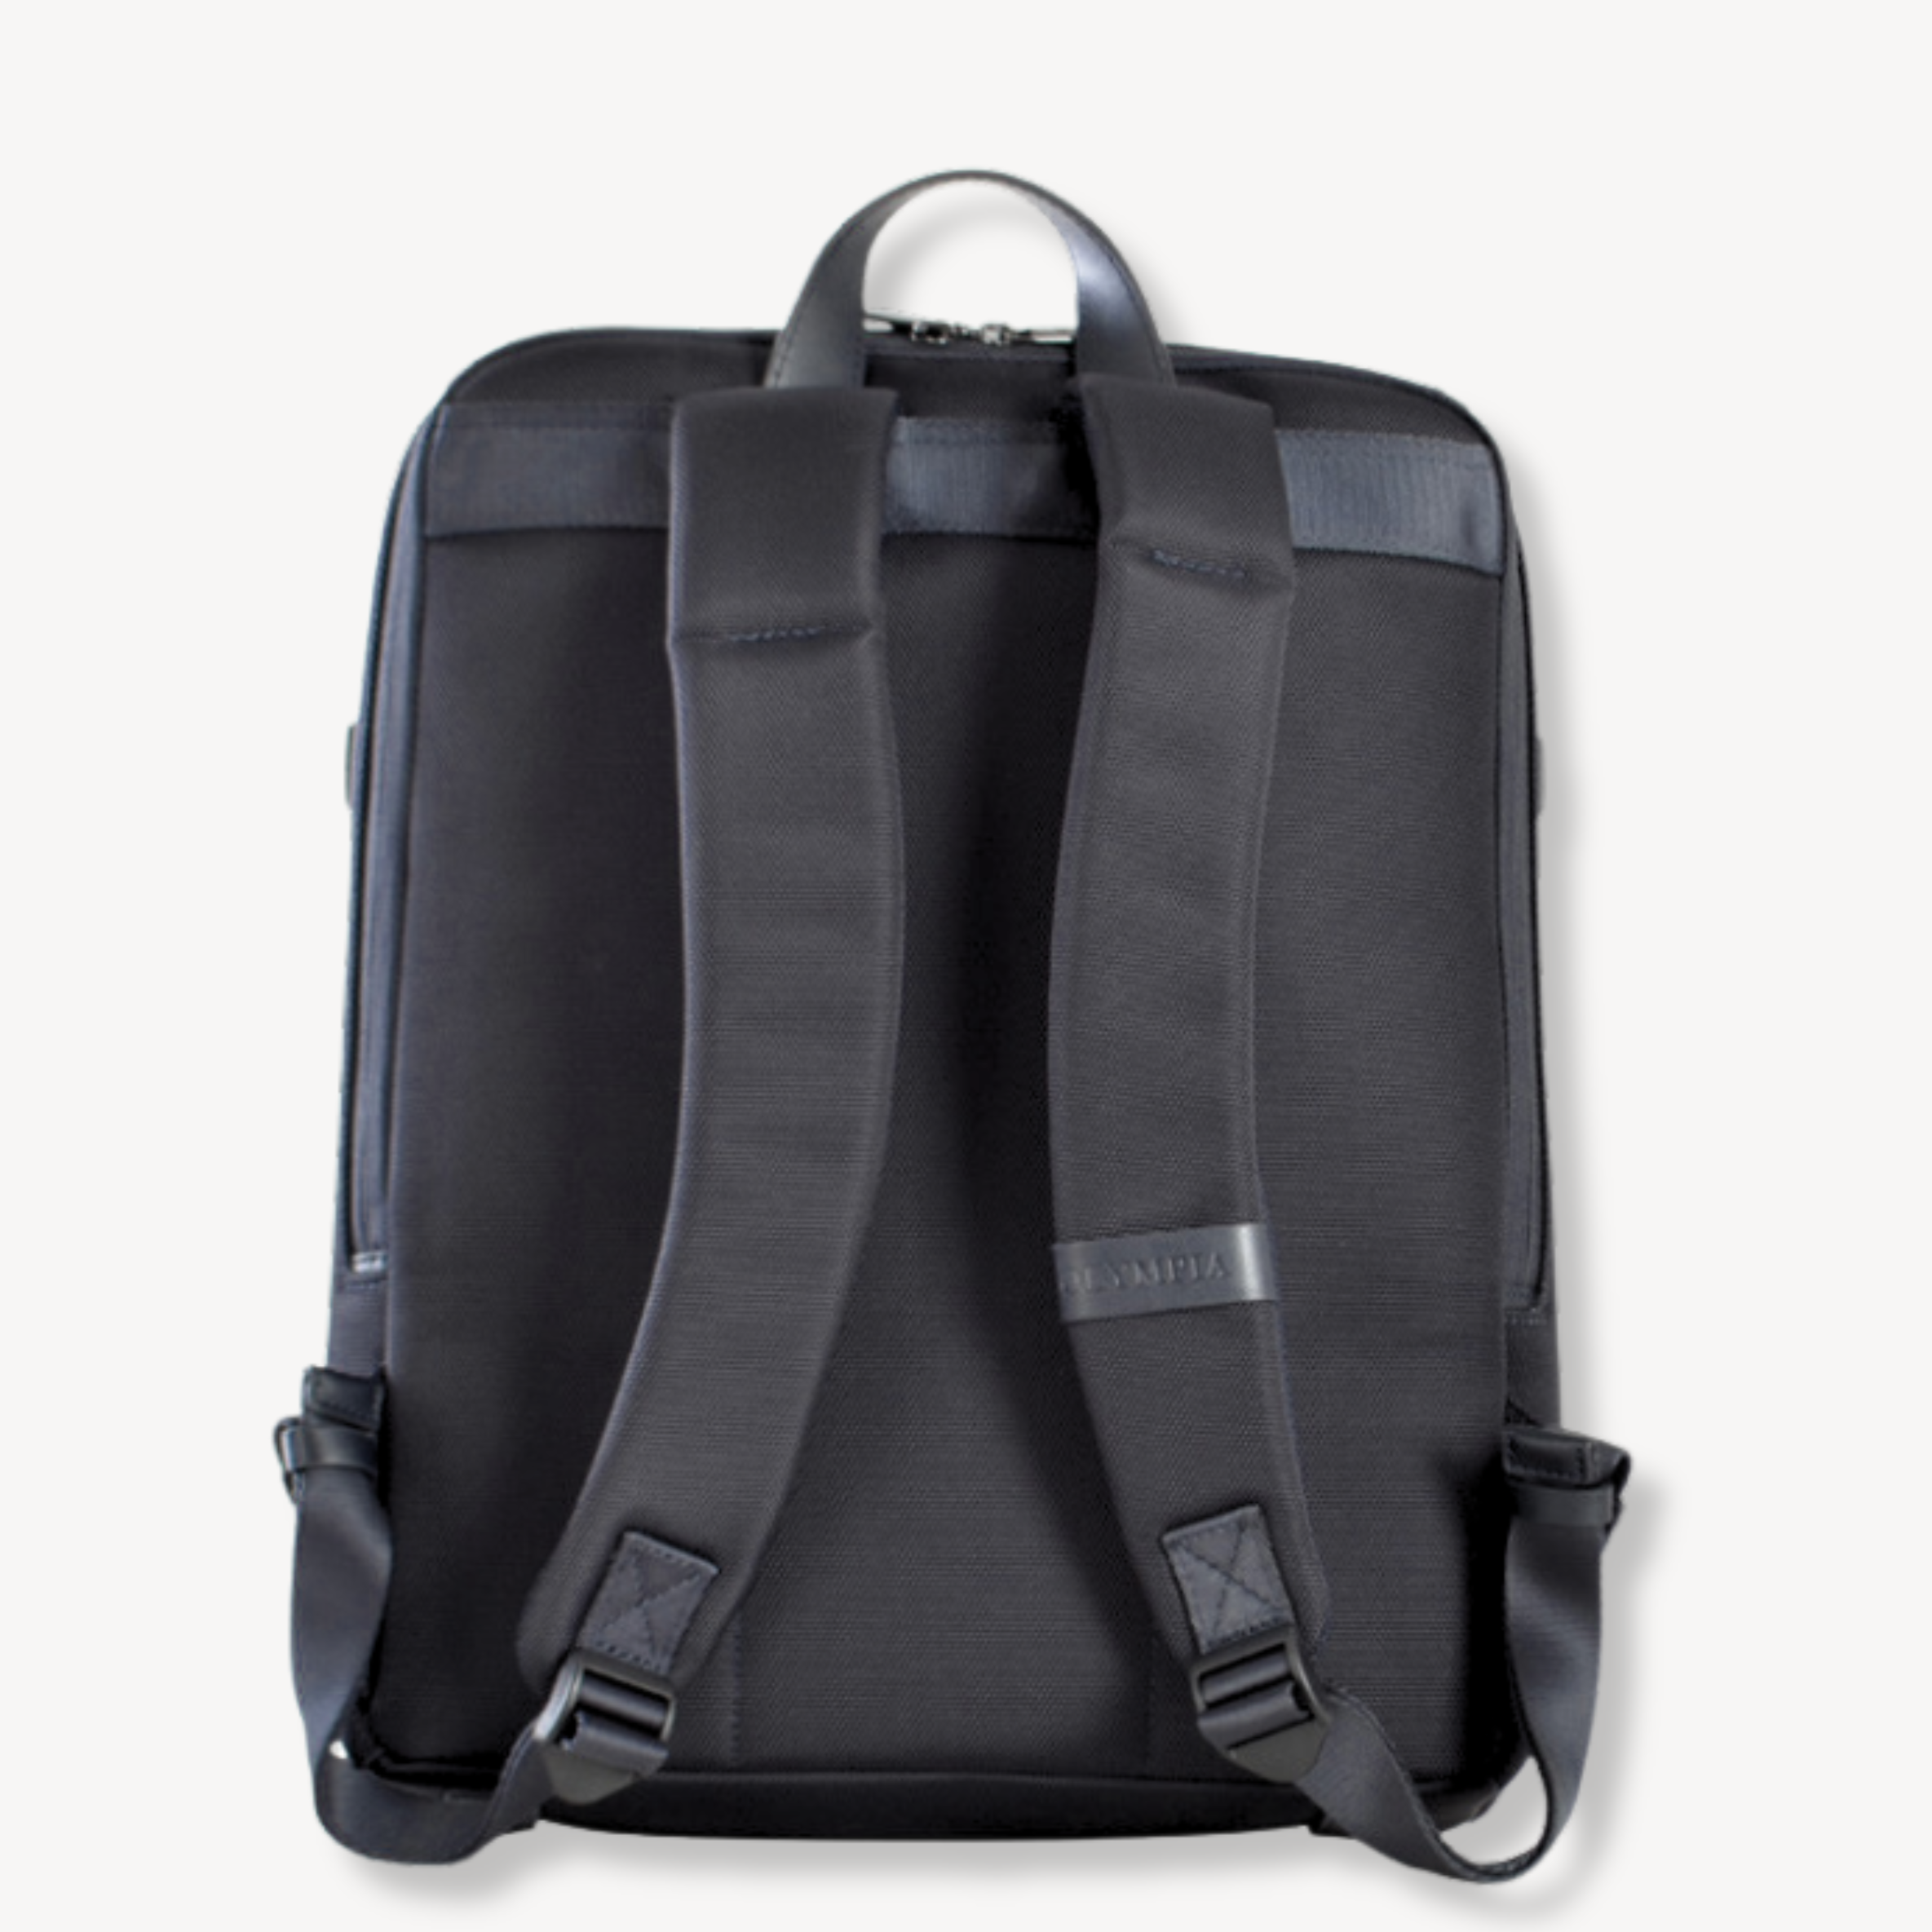 John Premium Water resistant Durable Business Backpack